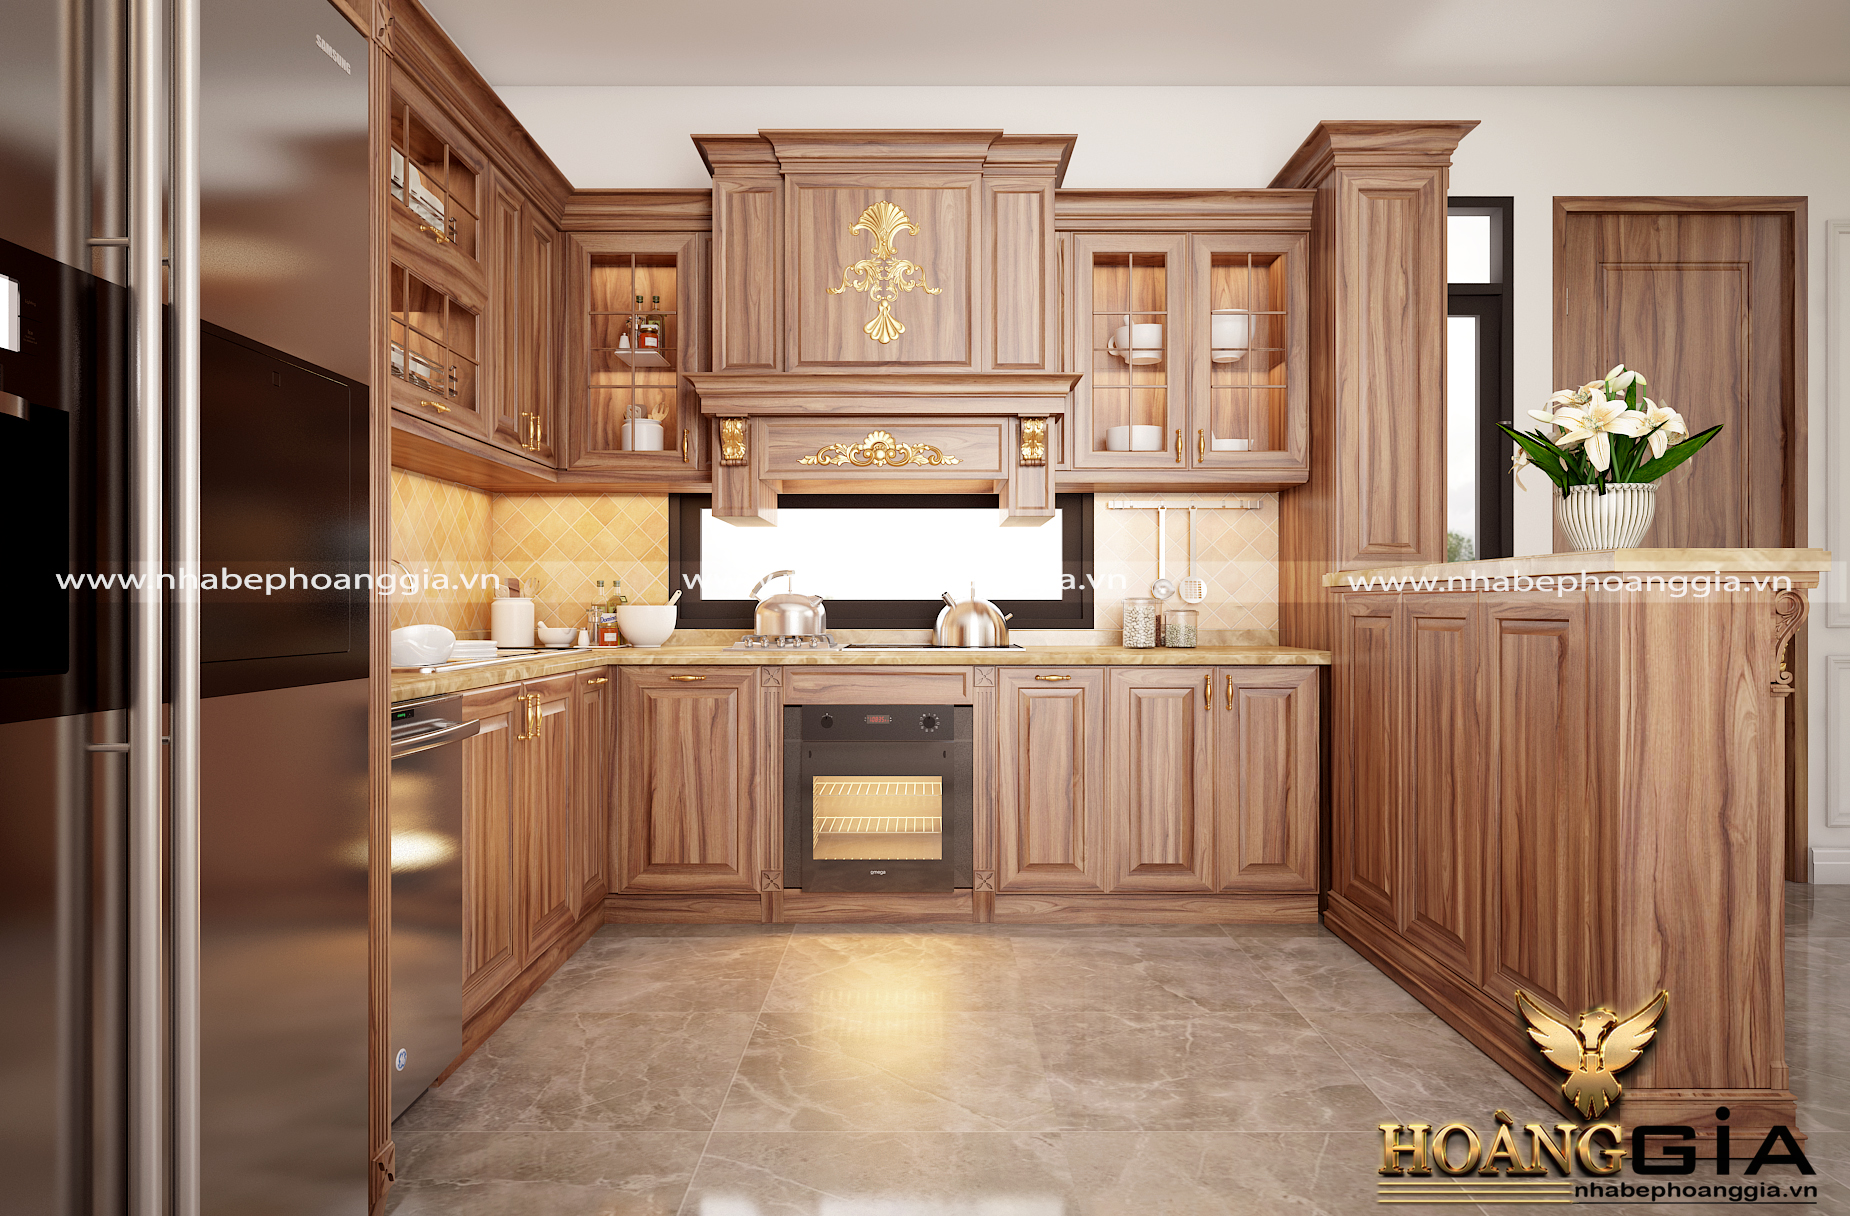 Thiết kế tủ bếp tân cổ điển: Thiết kế tủ bếp tân cổ điển đem đến cho bạn cảm giác sống trong không gian nhà bếp cổ kính, truyền thống nhưng vẫn đầy phong cách. Với những gợi ý thiết kế tinh tế từ các chuyên gia nội thất chuyên nghiệp, bạn sẽ có sự lựa chọn tốt và đặc biệt cho ngôi nhà của mình.